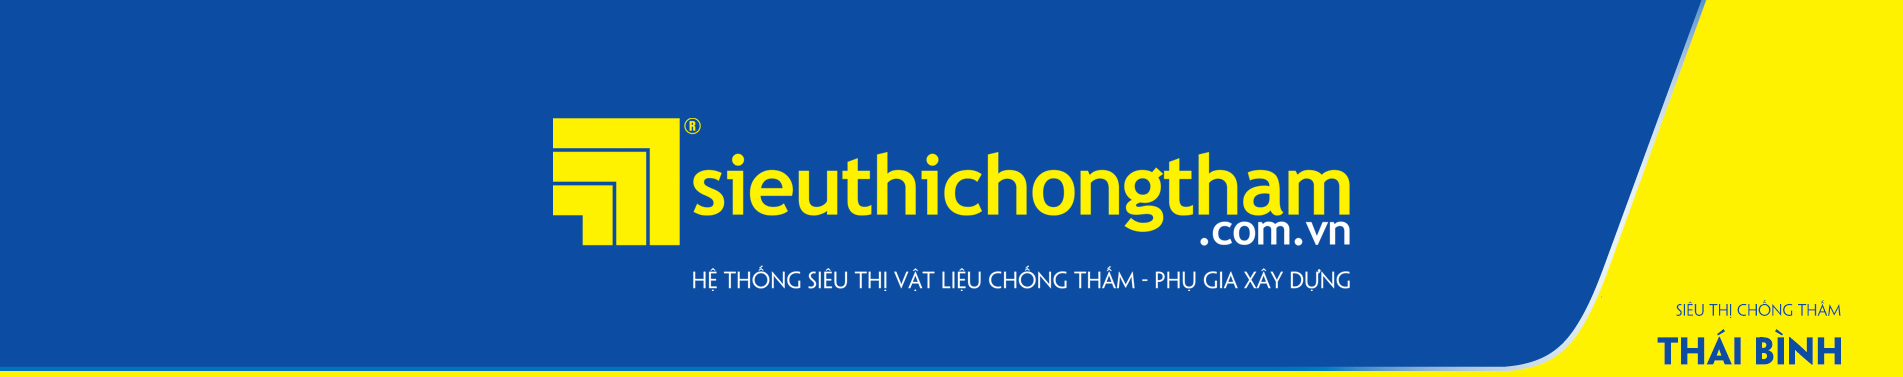 Sieu Thi Chong Tham Thai Binh